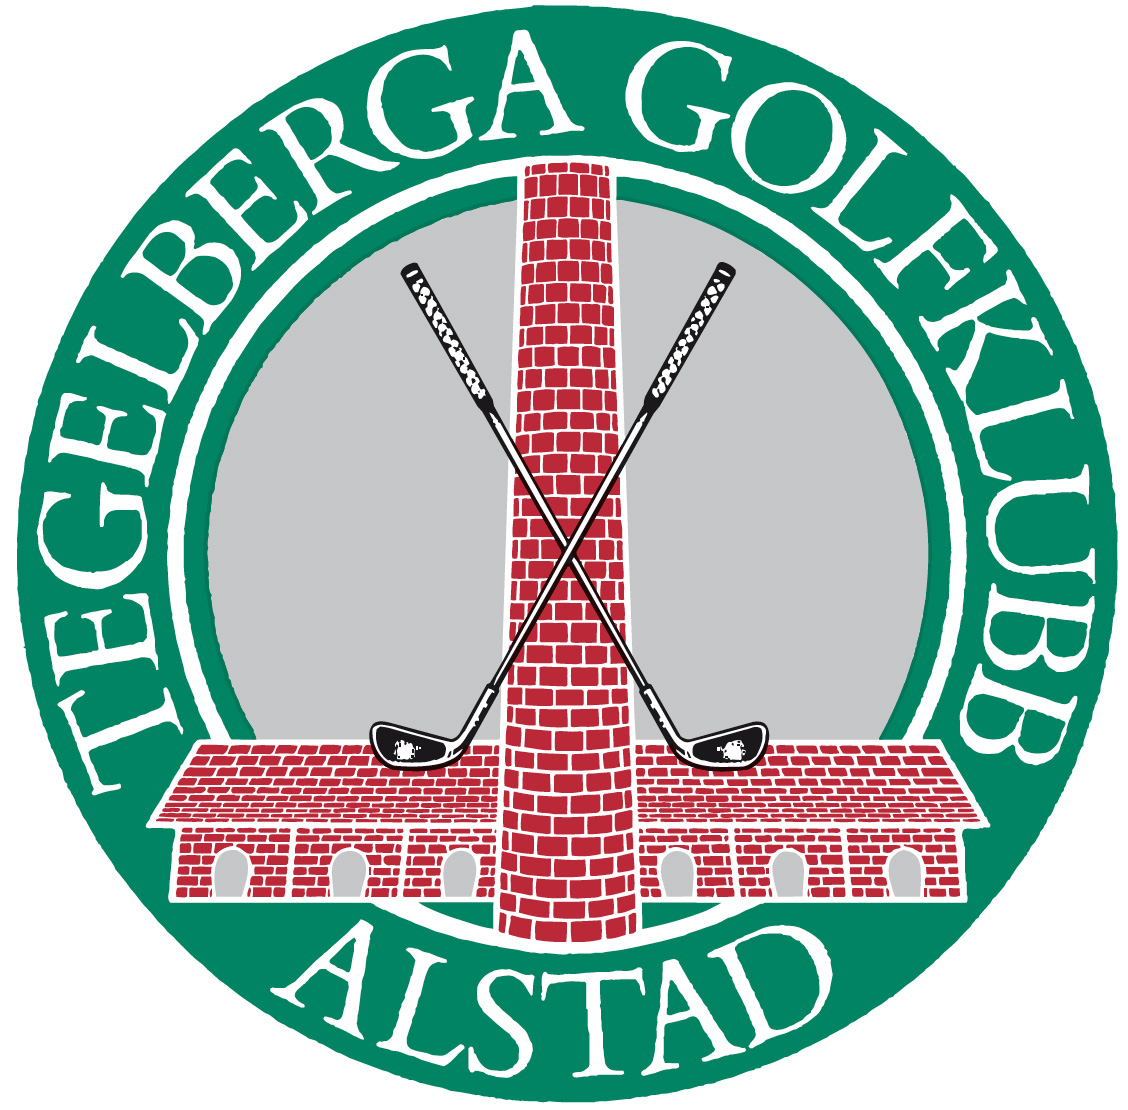 Tegelberga Golfklubb